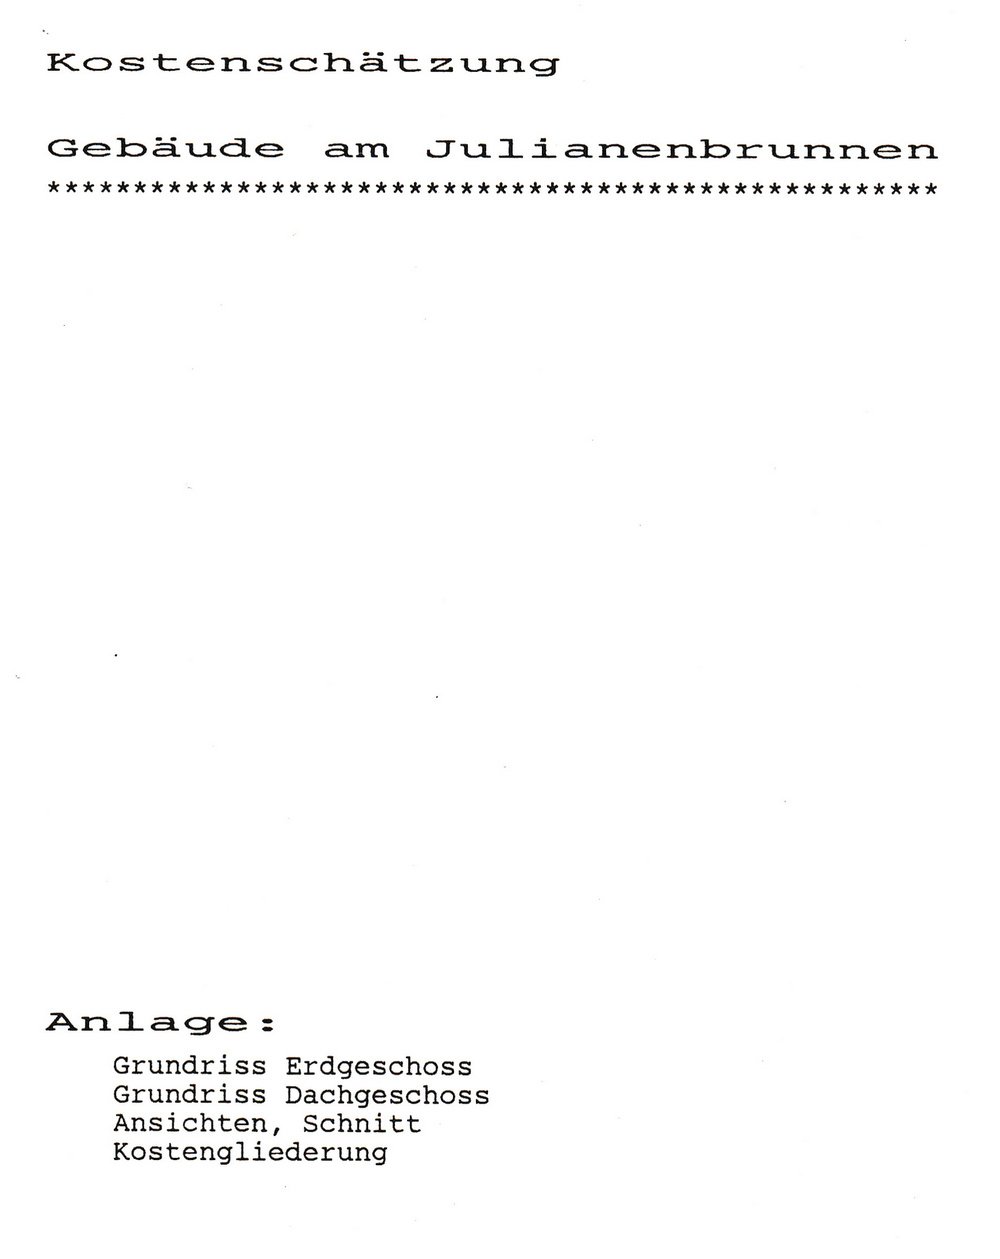 43047 Kostenschätzung 1988 (Museum Guntersblum CC BY-NC-SA)